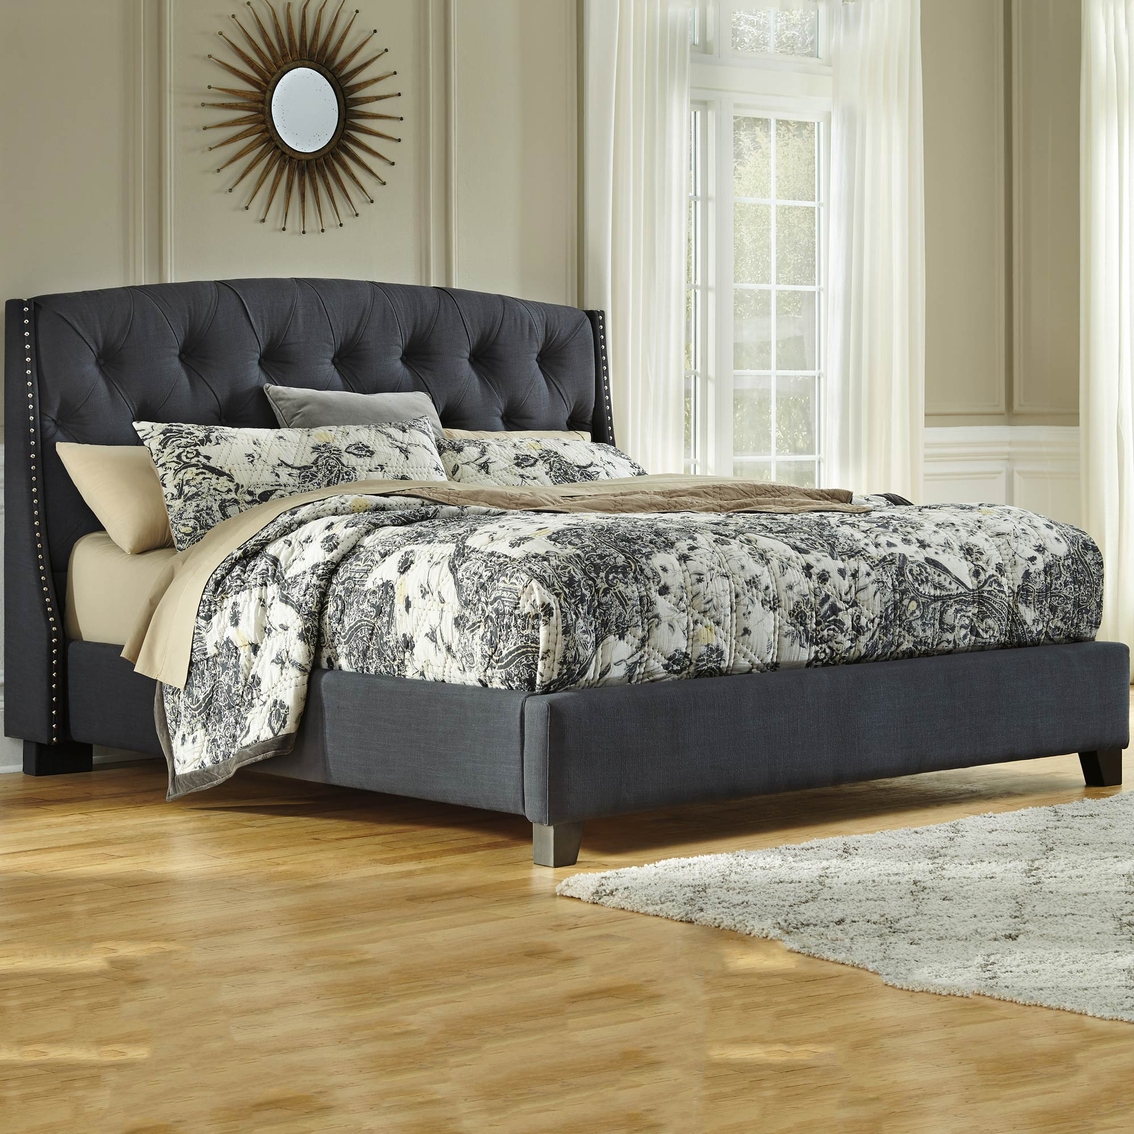 Ashley Kasidon King Tufted Upholstered Bed - Image 2 of 2